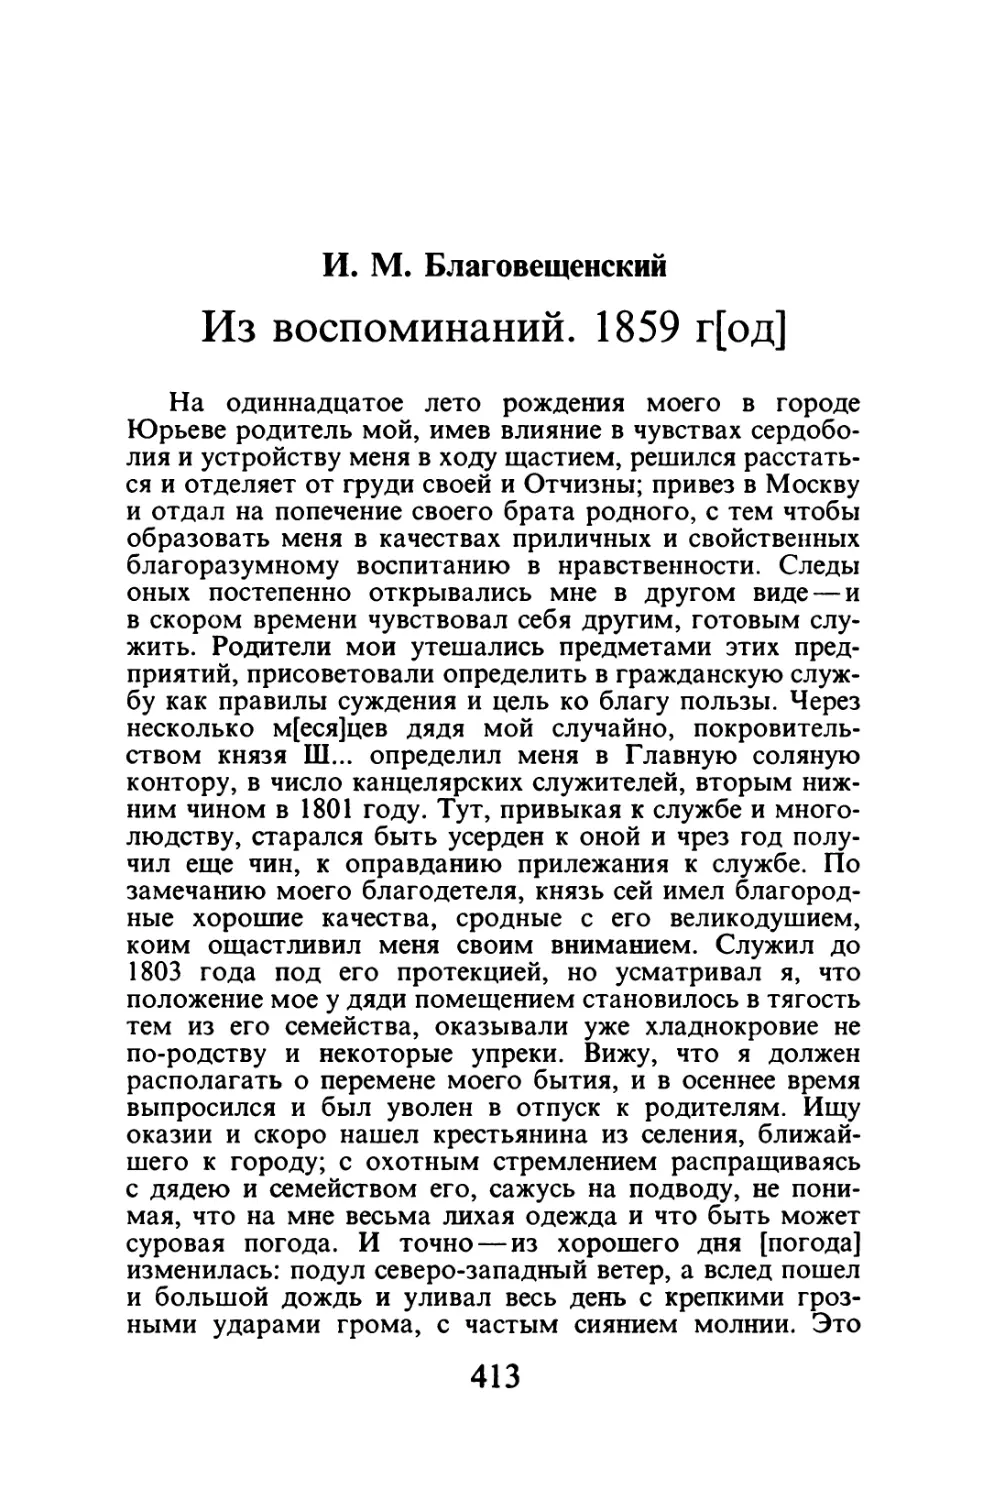 И.М. Благовещенский. Из воспоминаний. 1859 г.